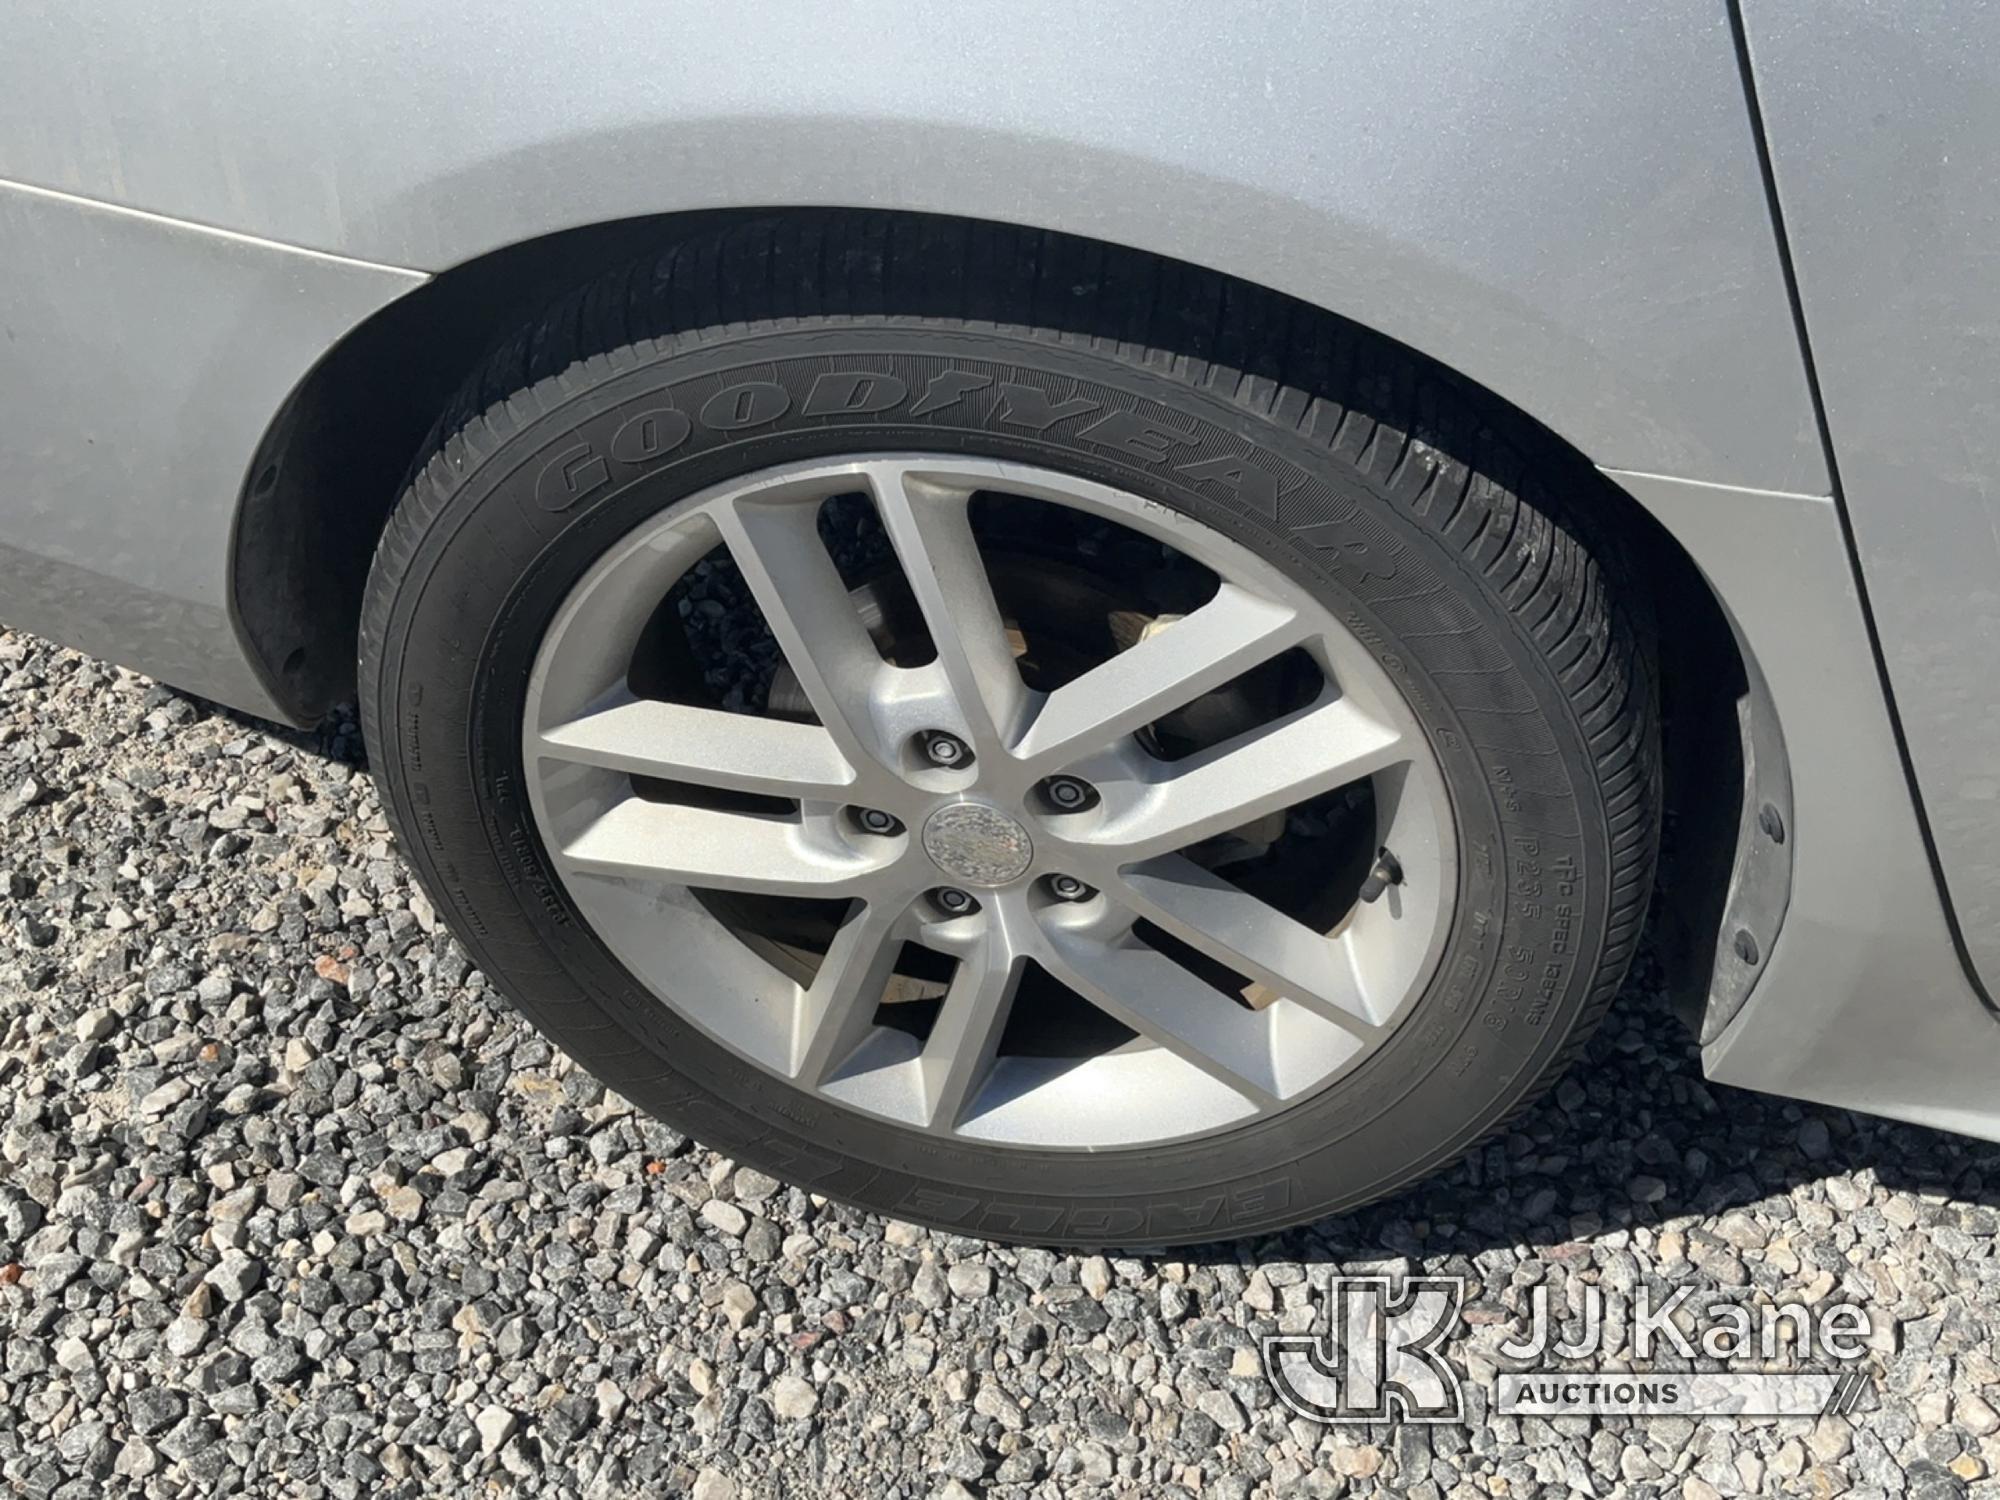 (Las Vegas, NV) 2013 Chevrolet Impala Trunk Latch Broken Jump To Start, Runs & Moves